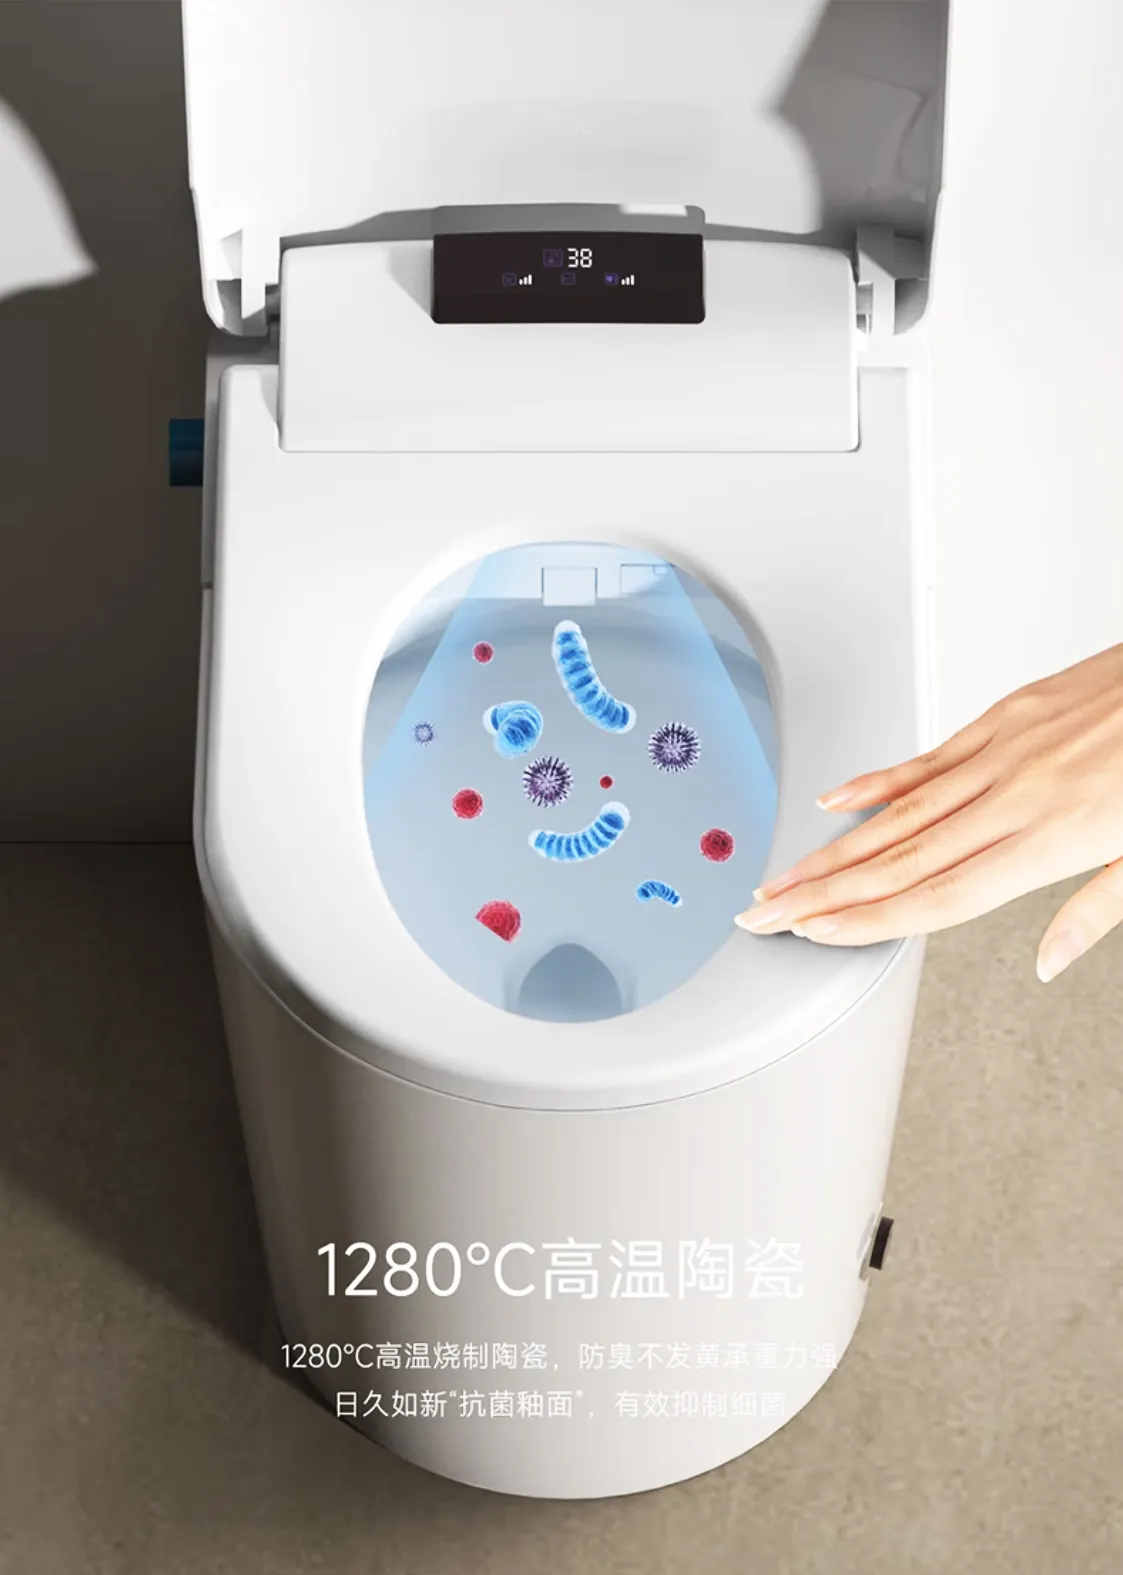 Zelfreinig Auto Open Sensor Flush Sifonische Automatische Toiletpot Vloer Elektronische Badkamer Wc Intelligent Smart Toilet